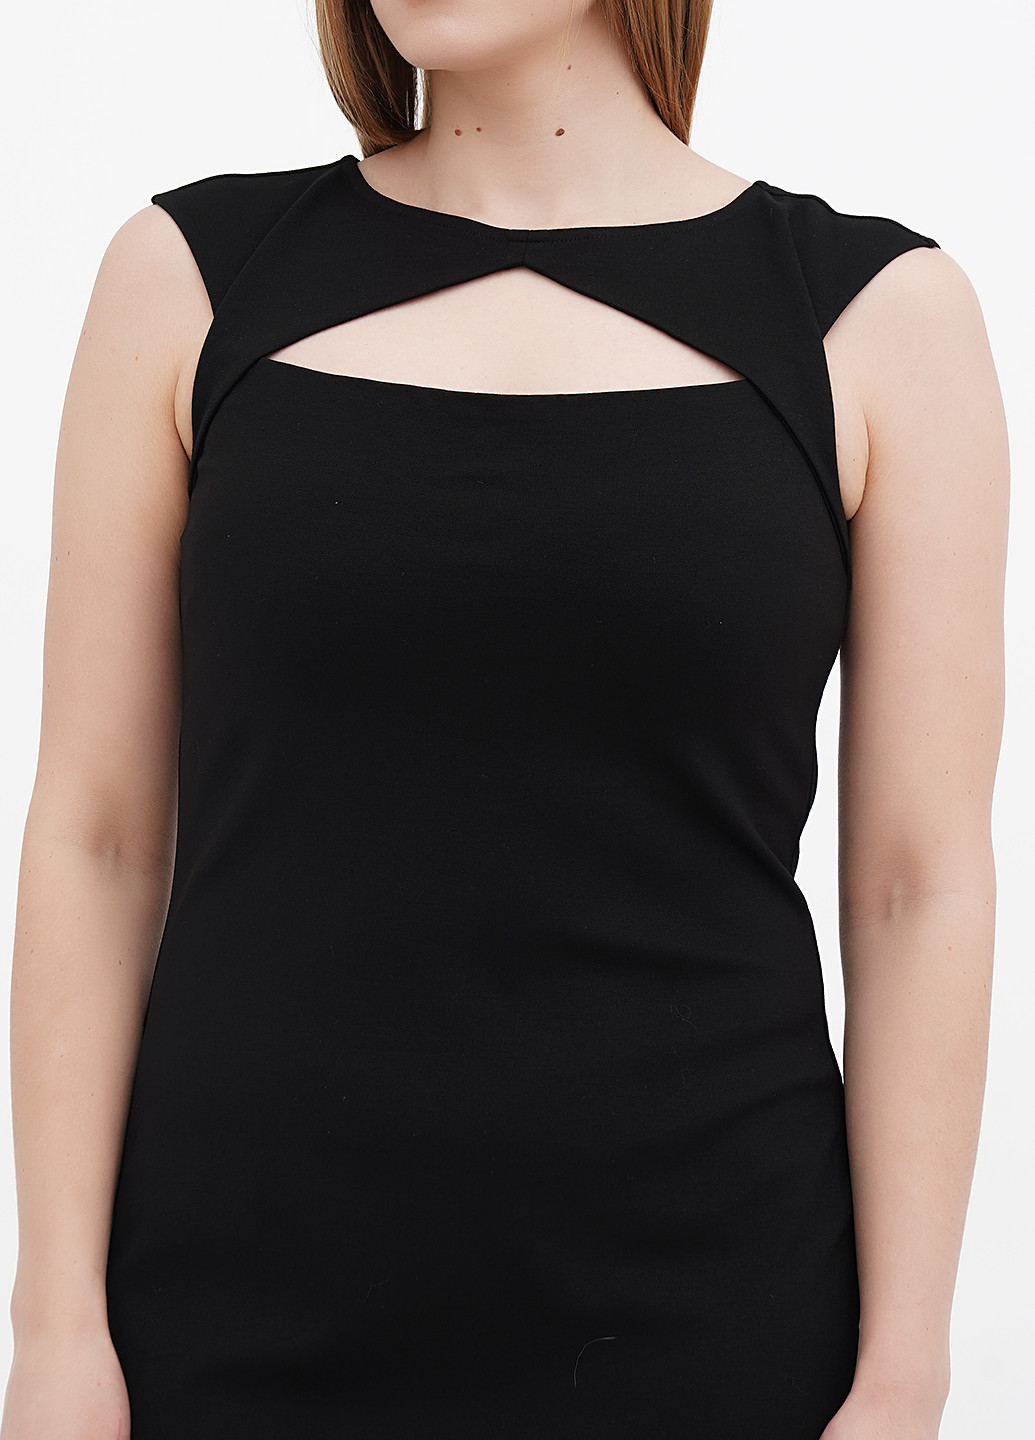 Черное коктейльное платье футляр Ralph Lauren однотонное